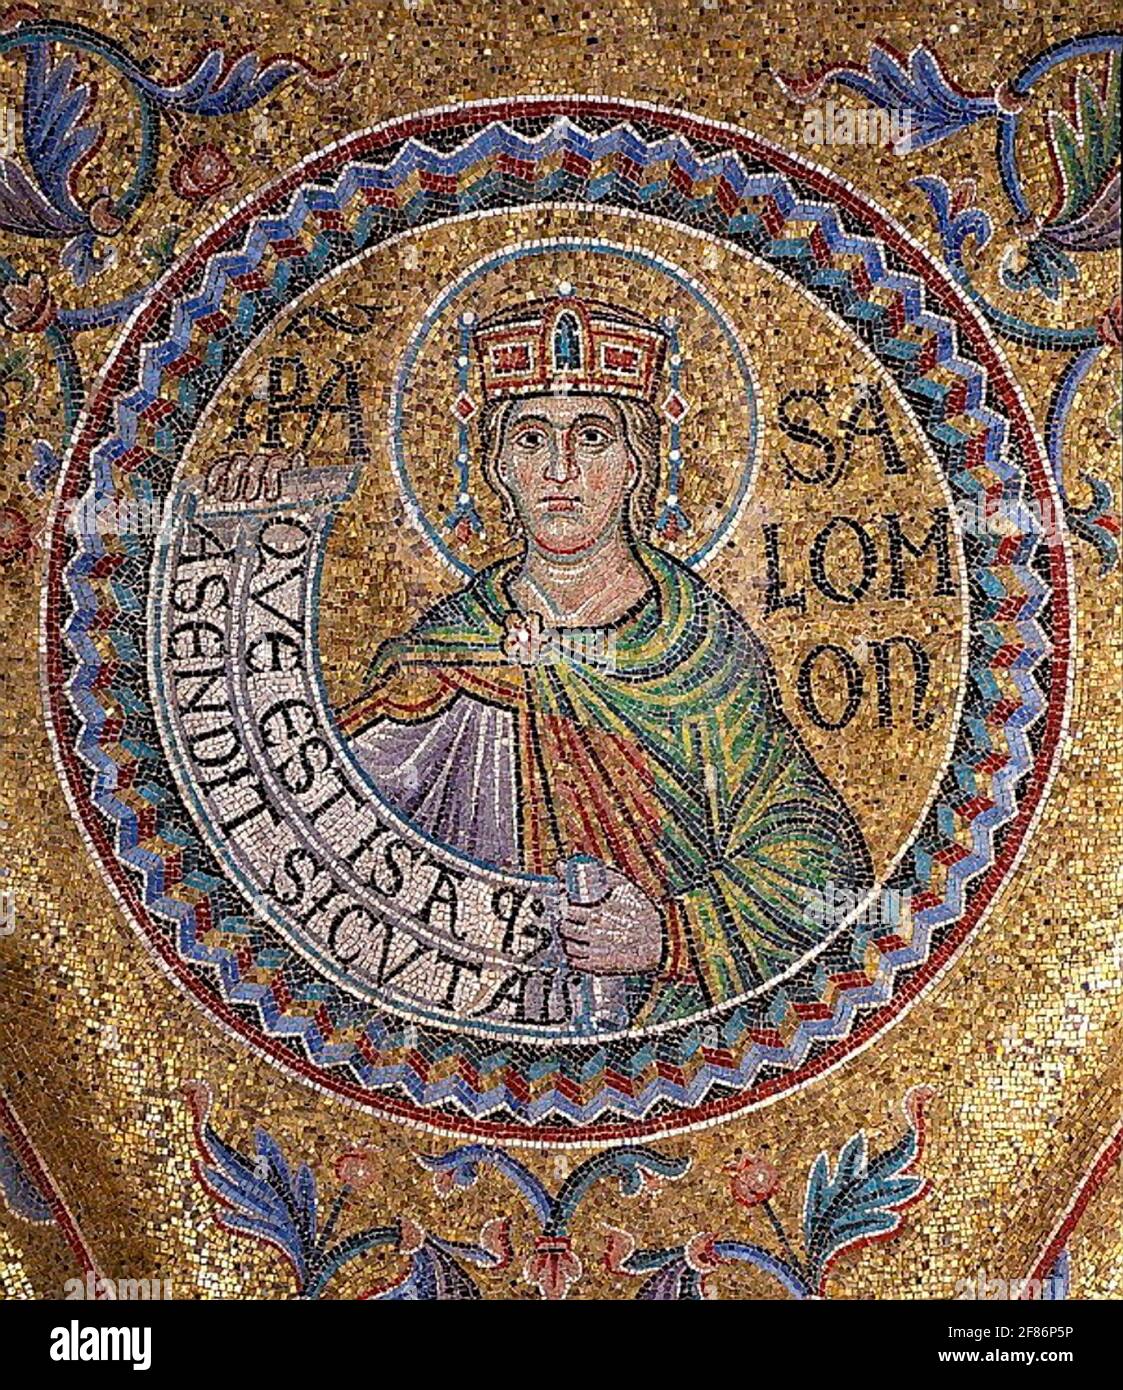 6801. Roi Salomon, détail de la mosaïque dans la basilique Saint-Marc, datant du 12ème. C. Venise, Italie. Banque D'Images